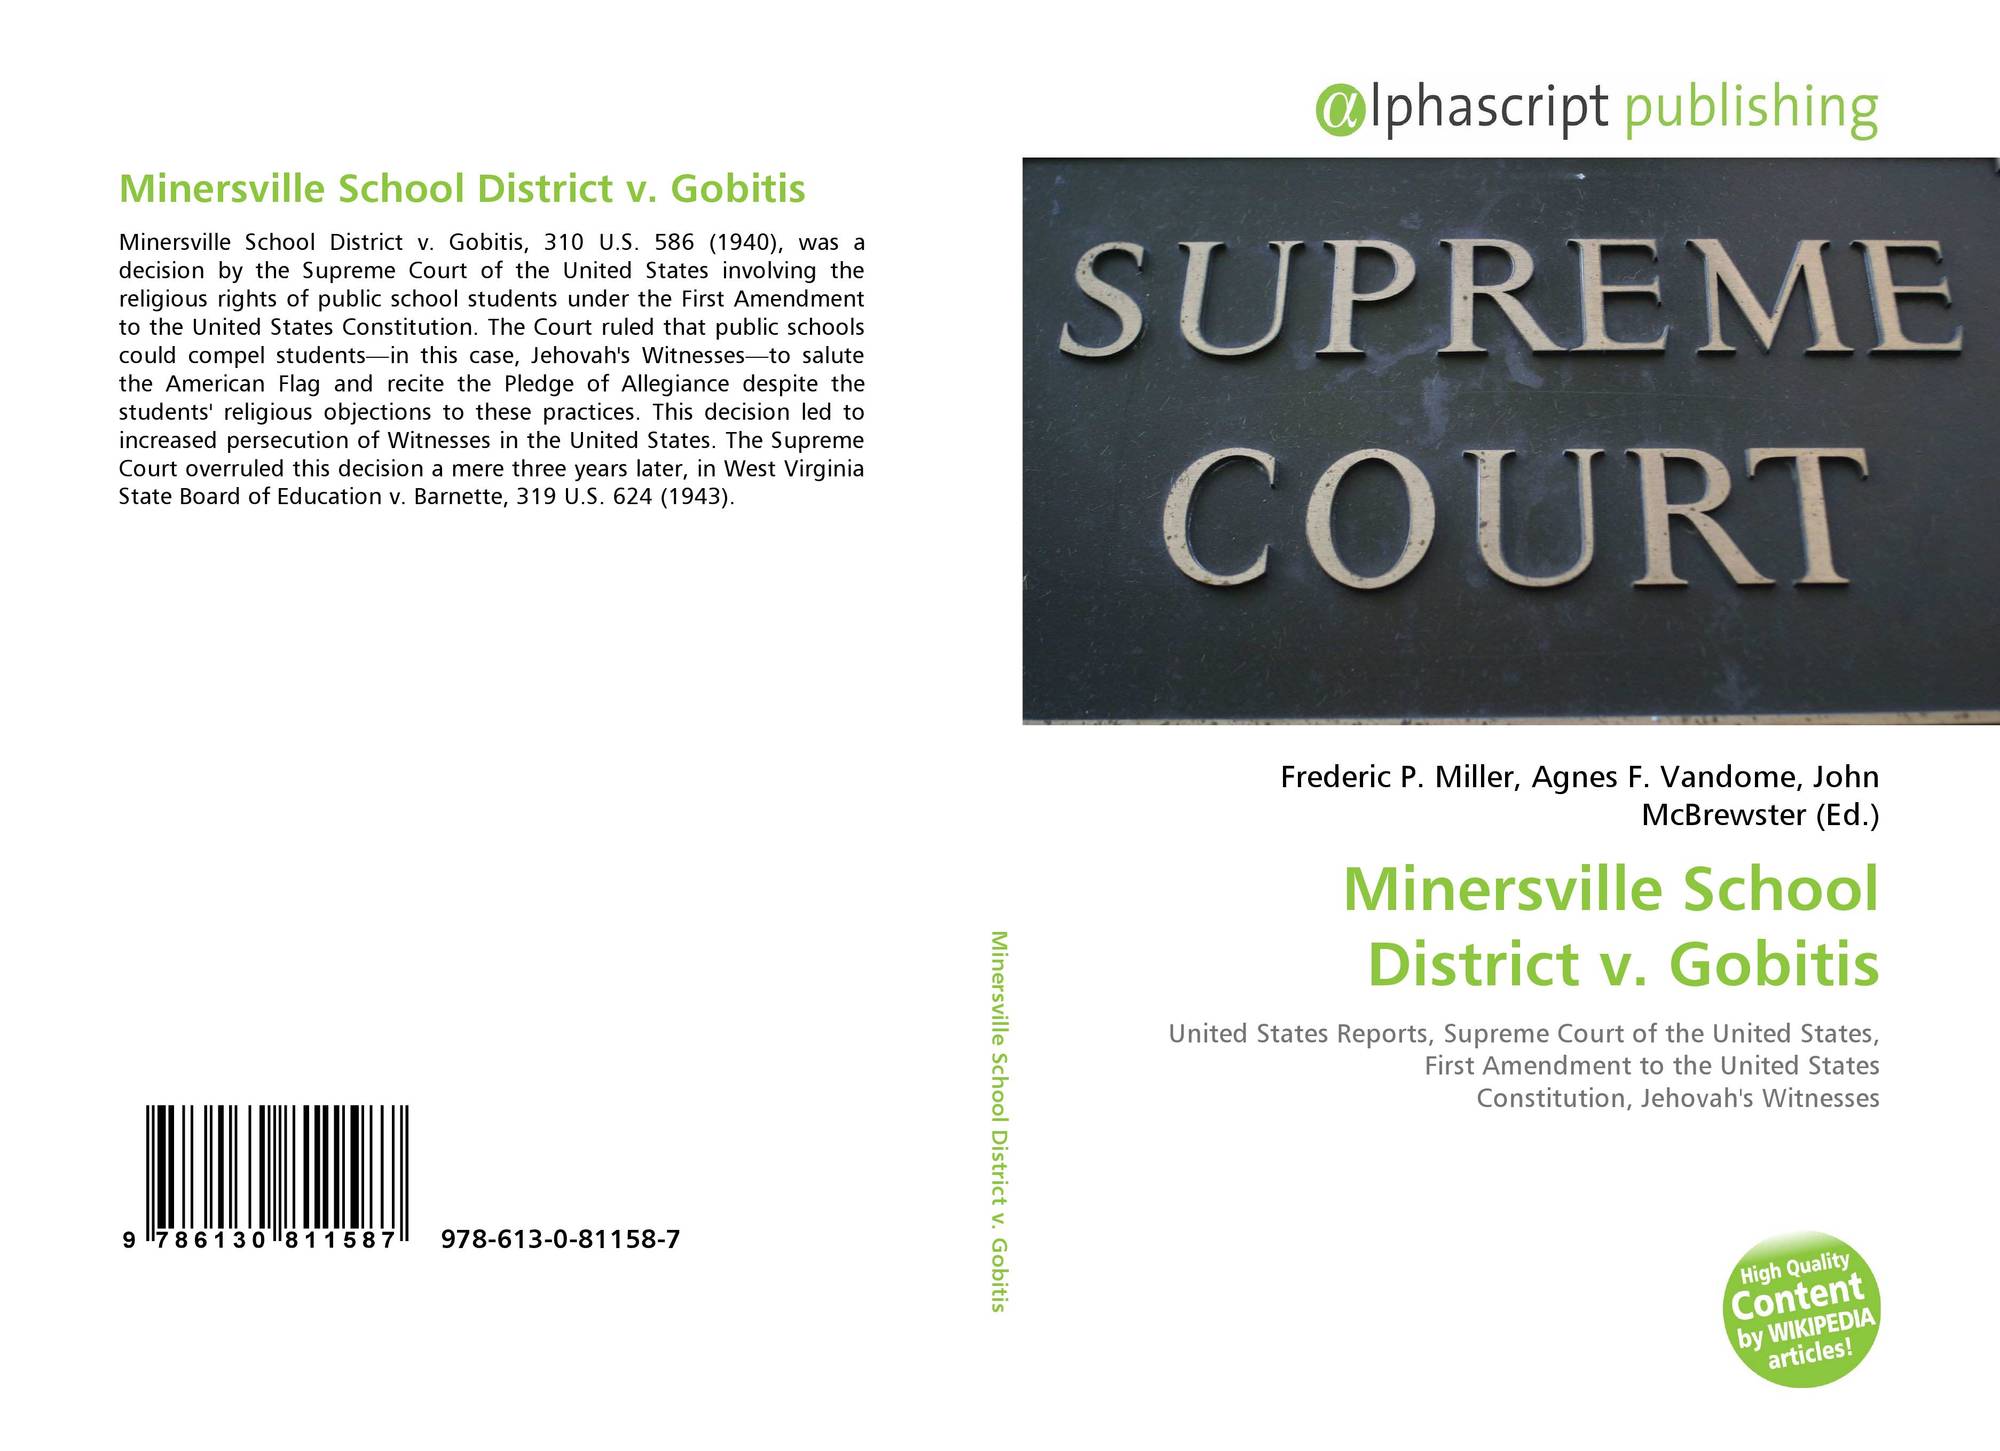 Minersville School District v. Gobitis, 978-613-0-81158-7, 6130811586